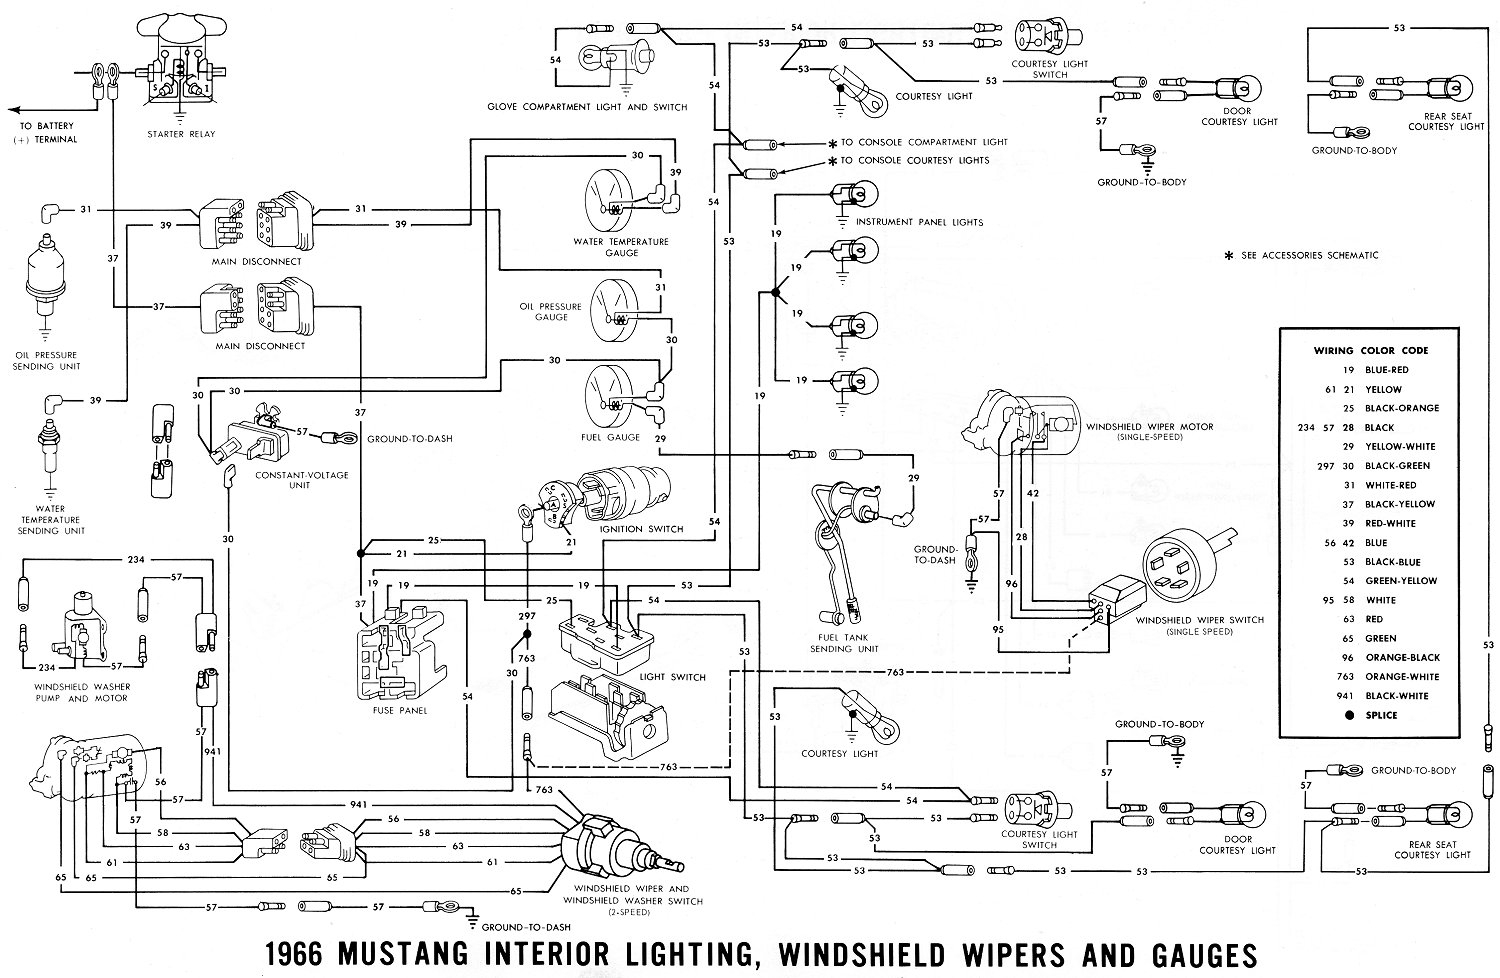 1967 Mustang Wiring Diagram Free - Wiring Diagram Name - 1967 Mustang Wiring Diagram